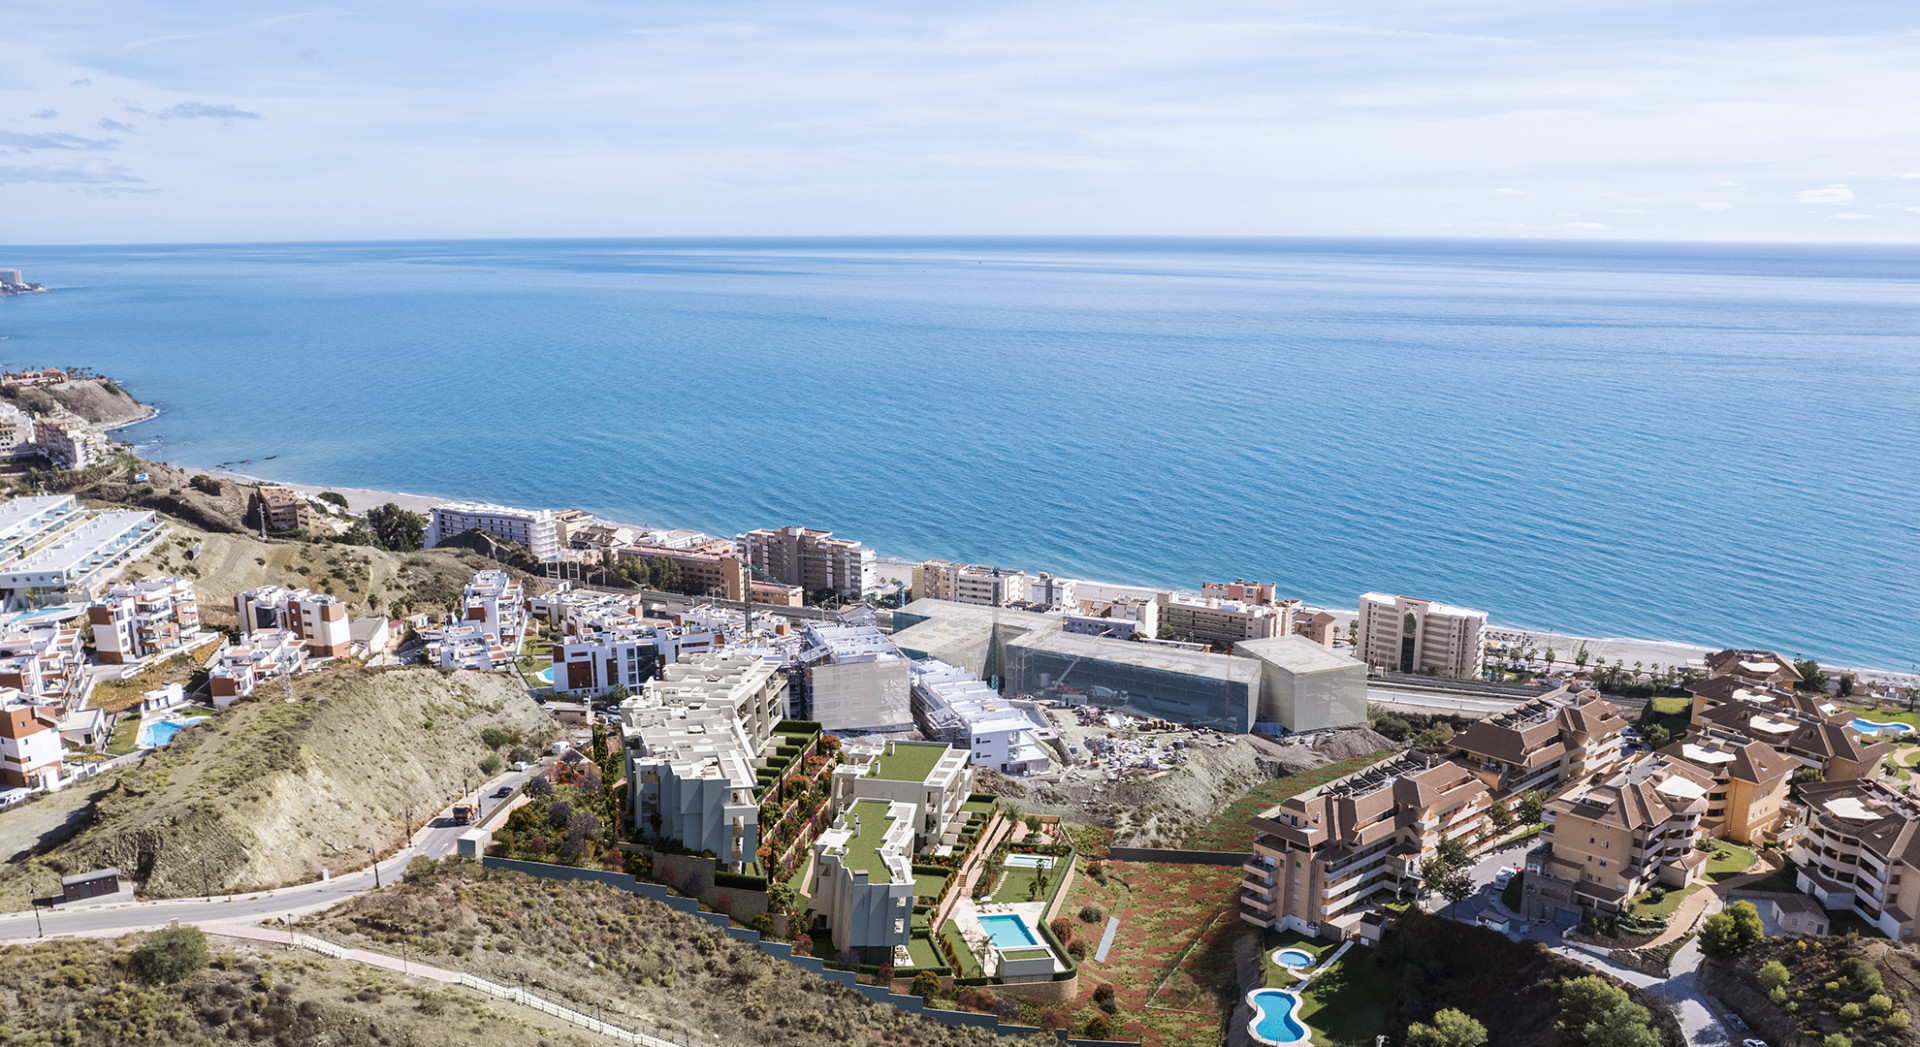 Nieuw project van 60 luxueuze appartementen vlakbij het strand en met uitzicht op zee. 226